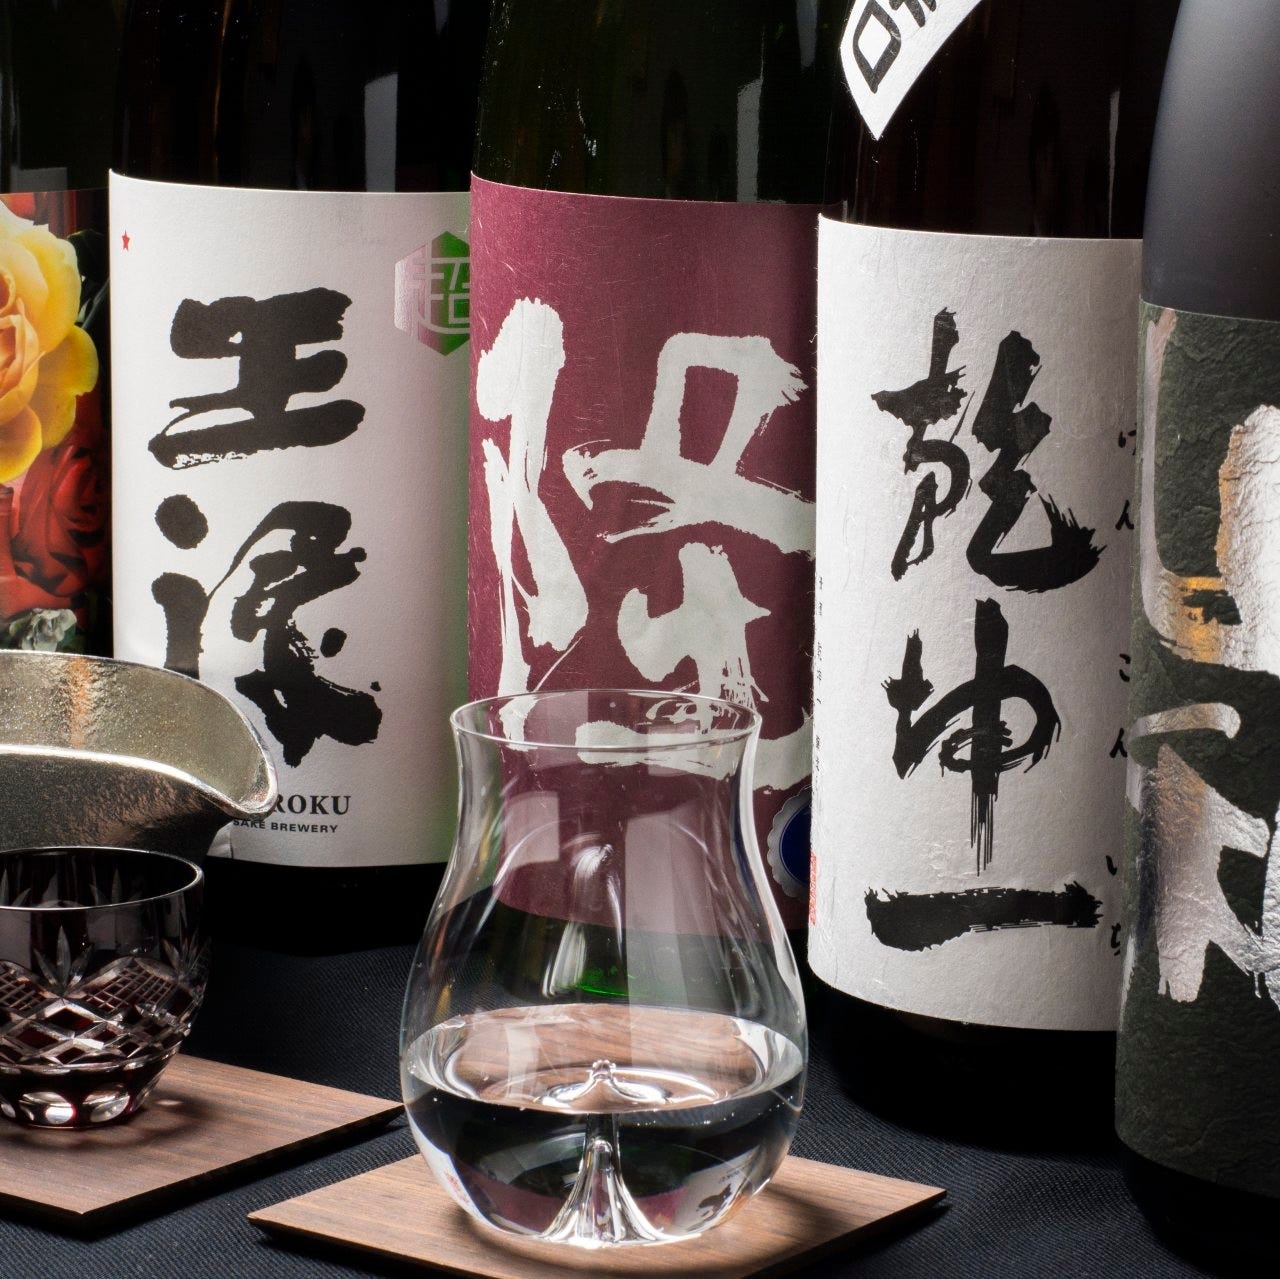 世界に名を馳せる日本の銘酒